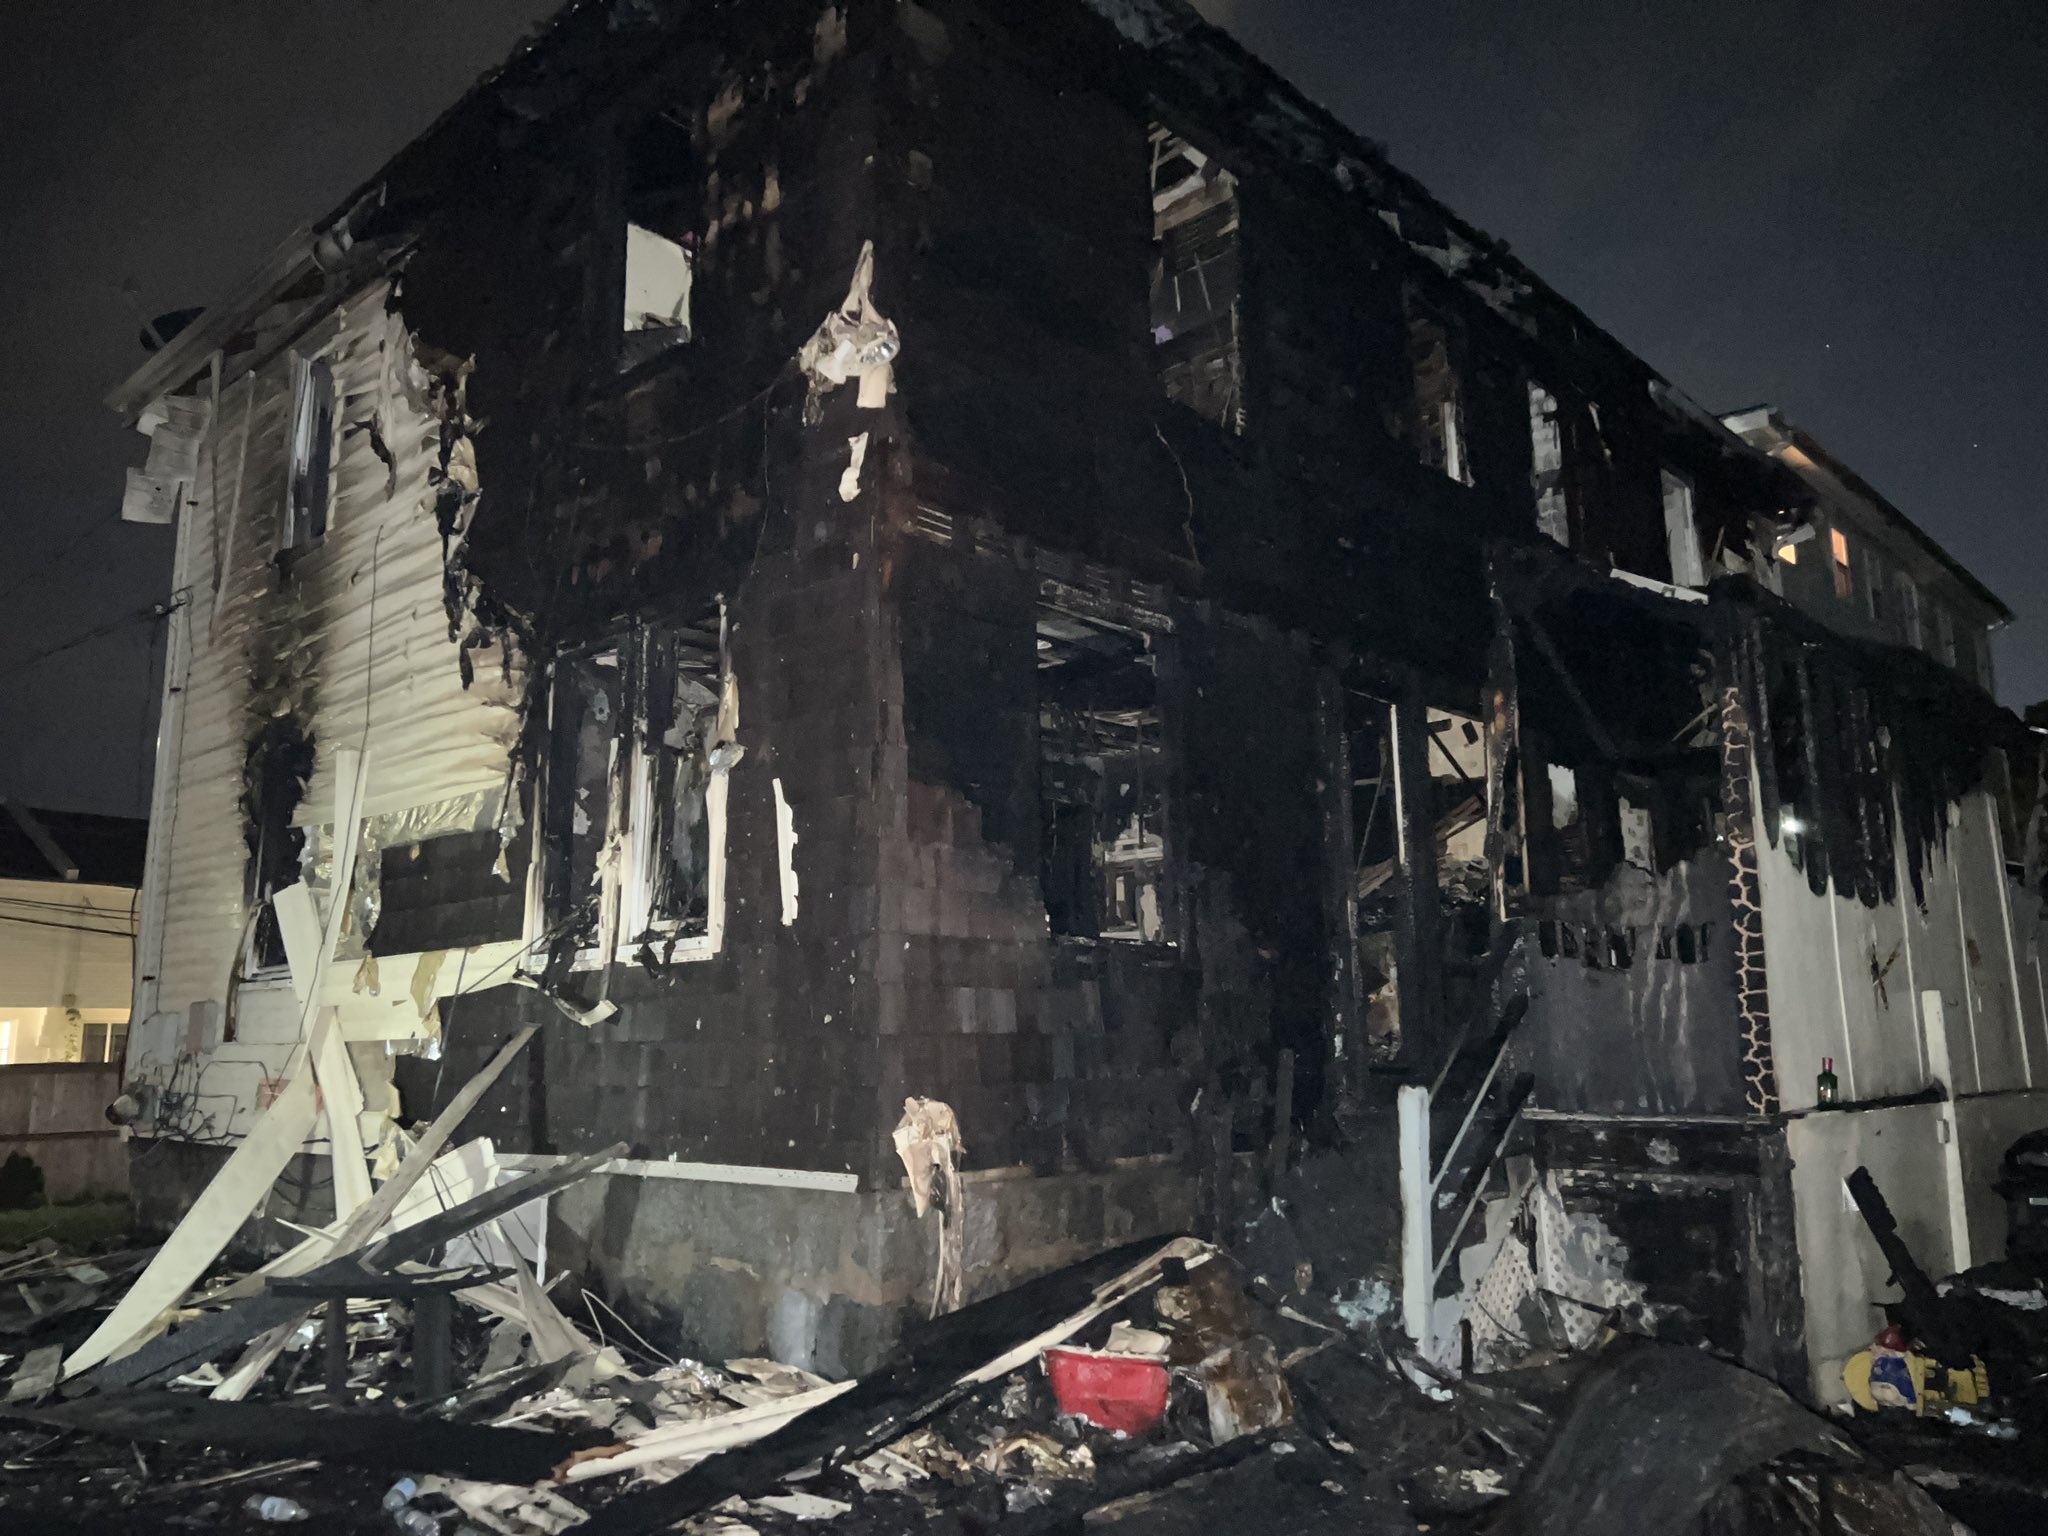 burned home in Roslindale, Ma